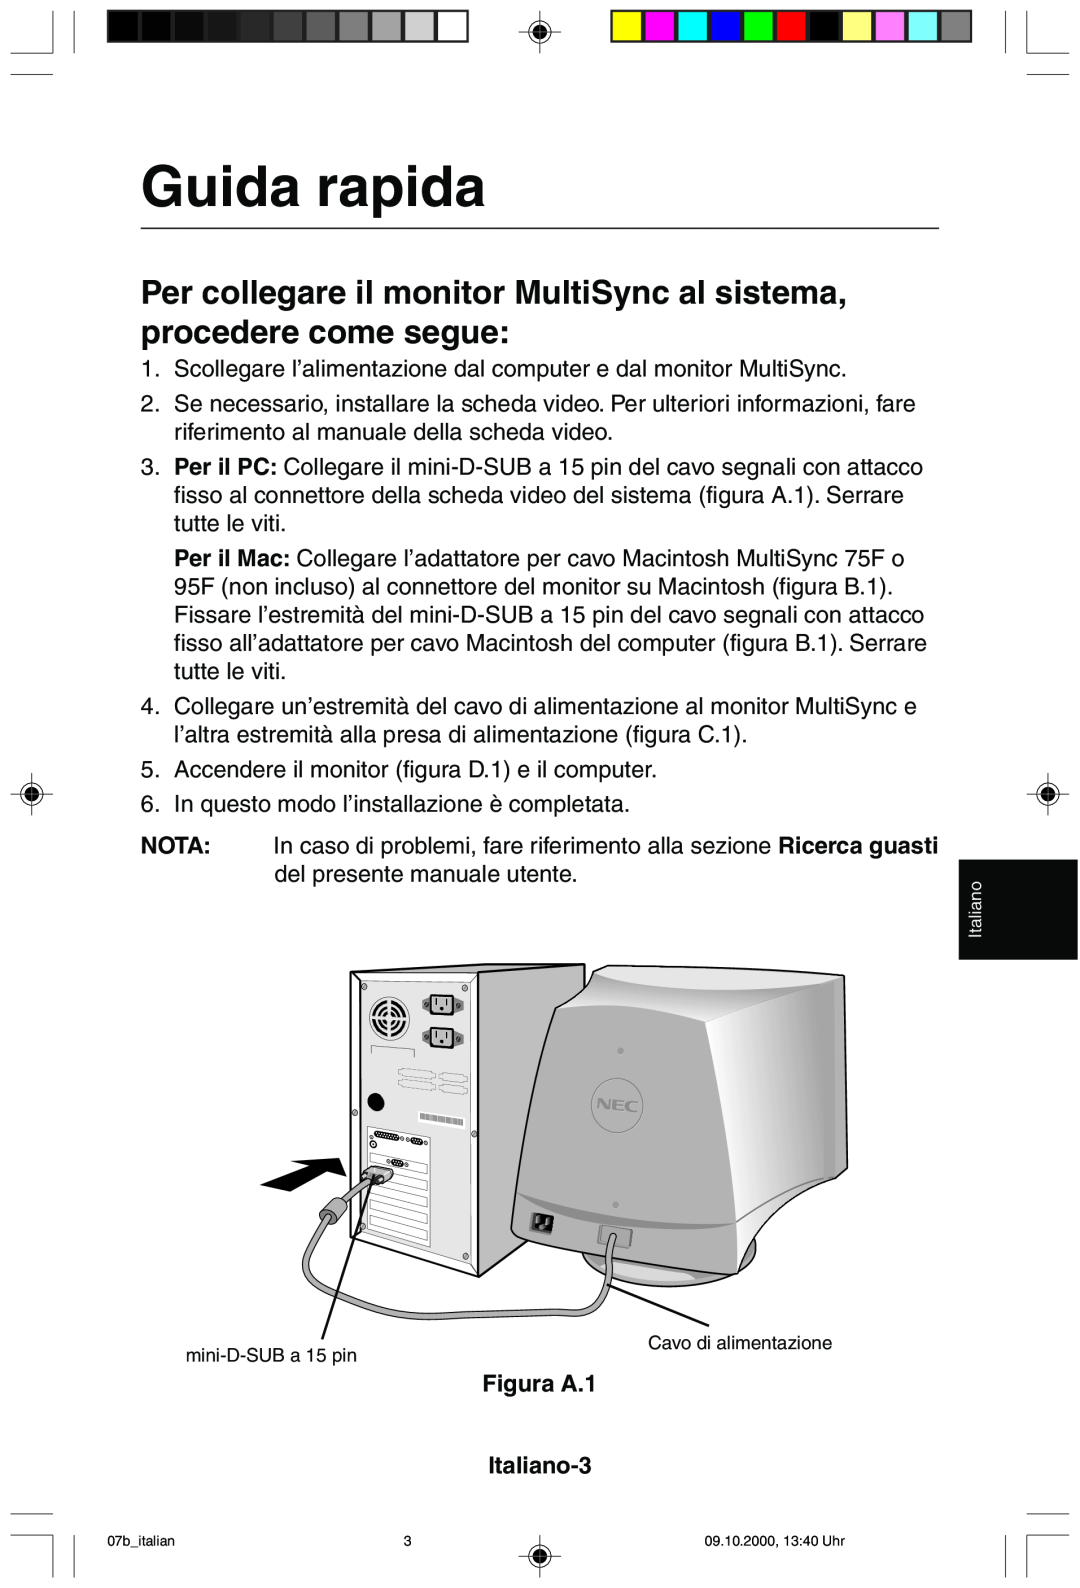 NEC 95F Guida rapida, Per collegare il monitor MultiSync al sistema, procedere come segue, Nota, Figura A.1 Italiano-3 